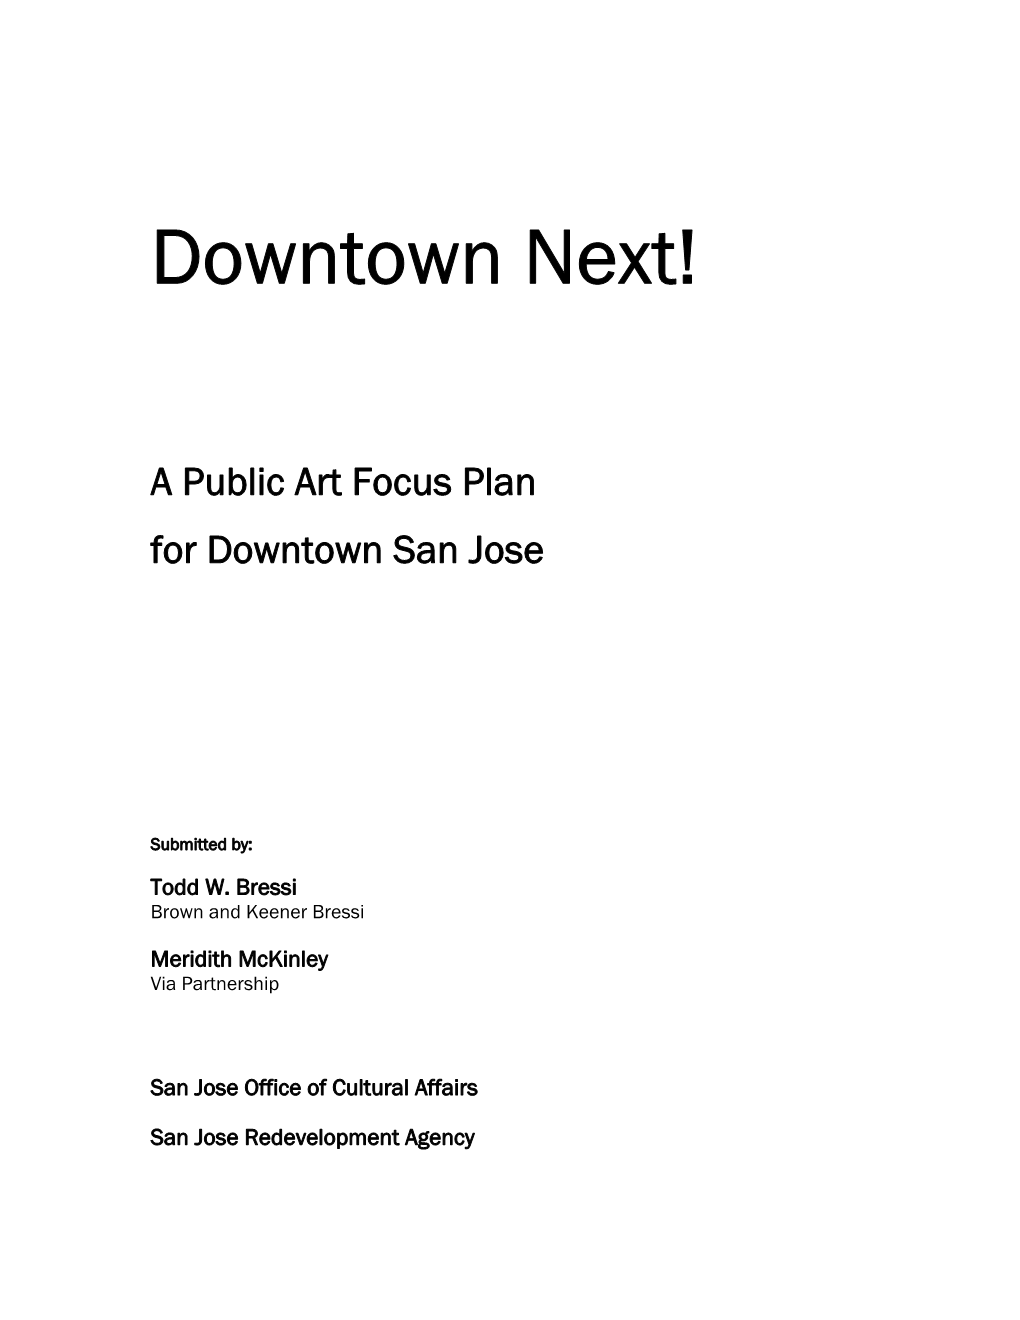 Downtown Public Art Focus Plan